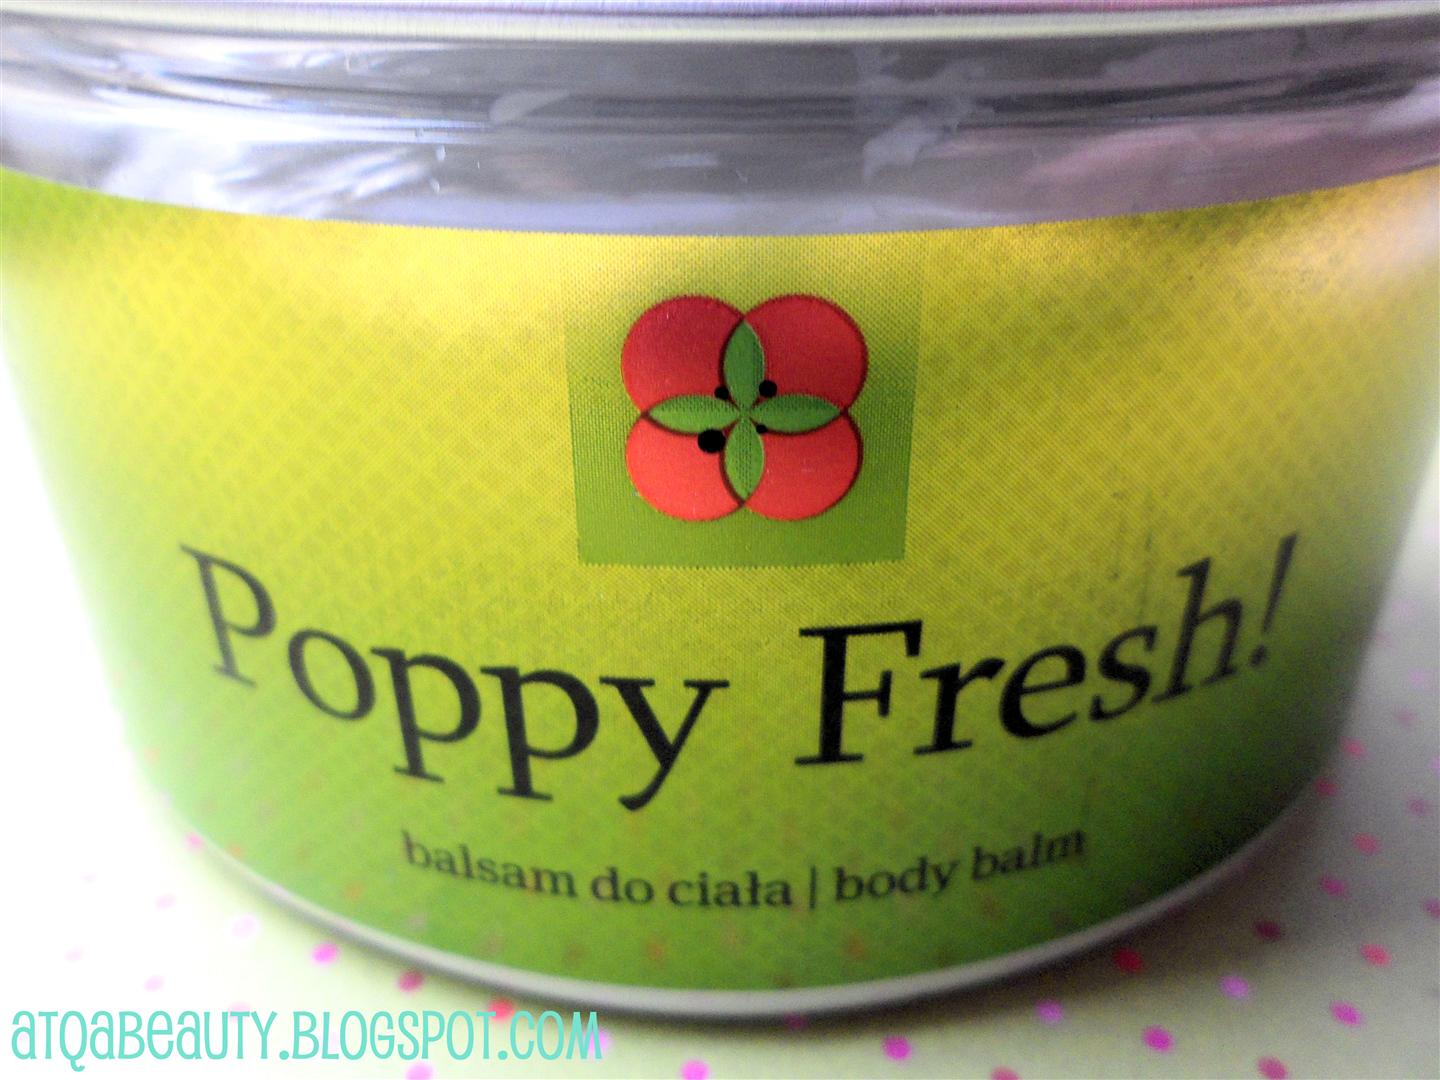 Pielęgnacja :: Maki w słoiku, czyli balsam do ciała Poppy Fresh! Salco au Naturel